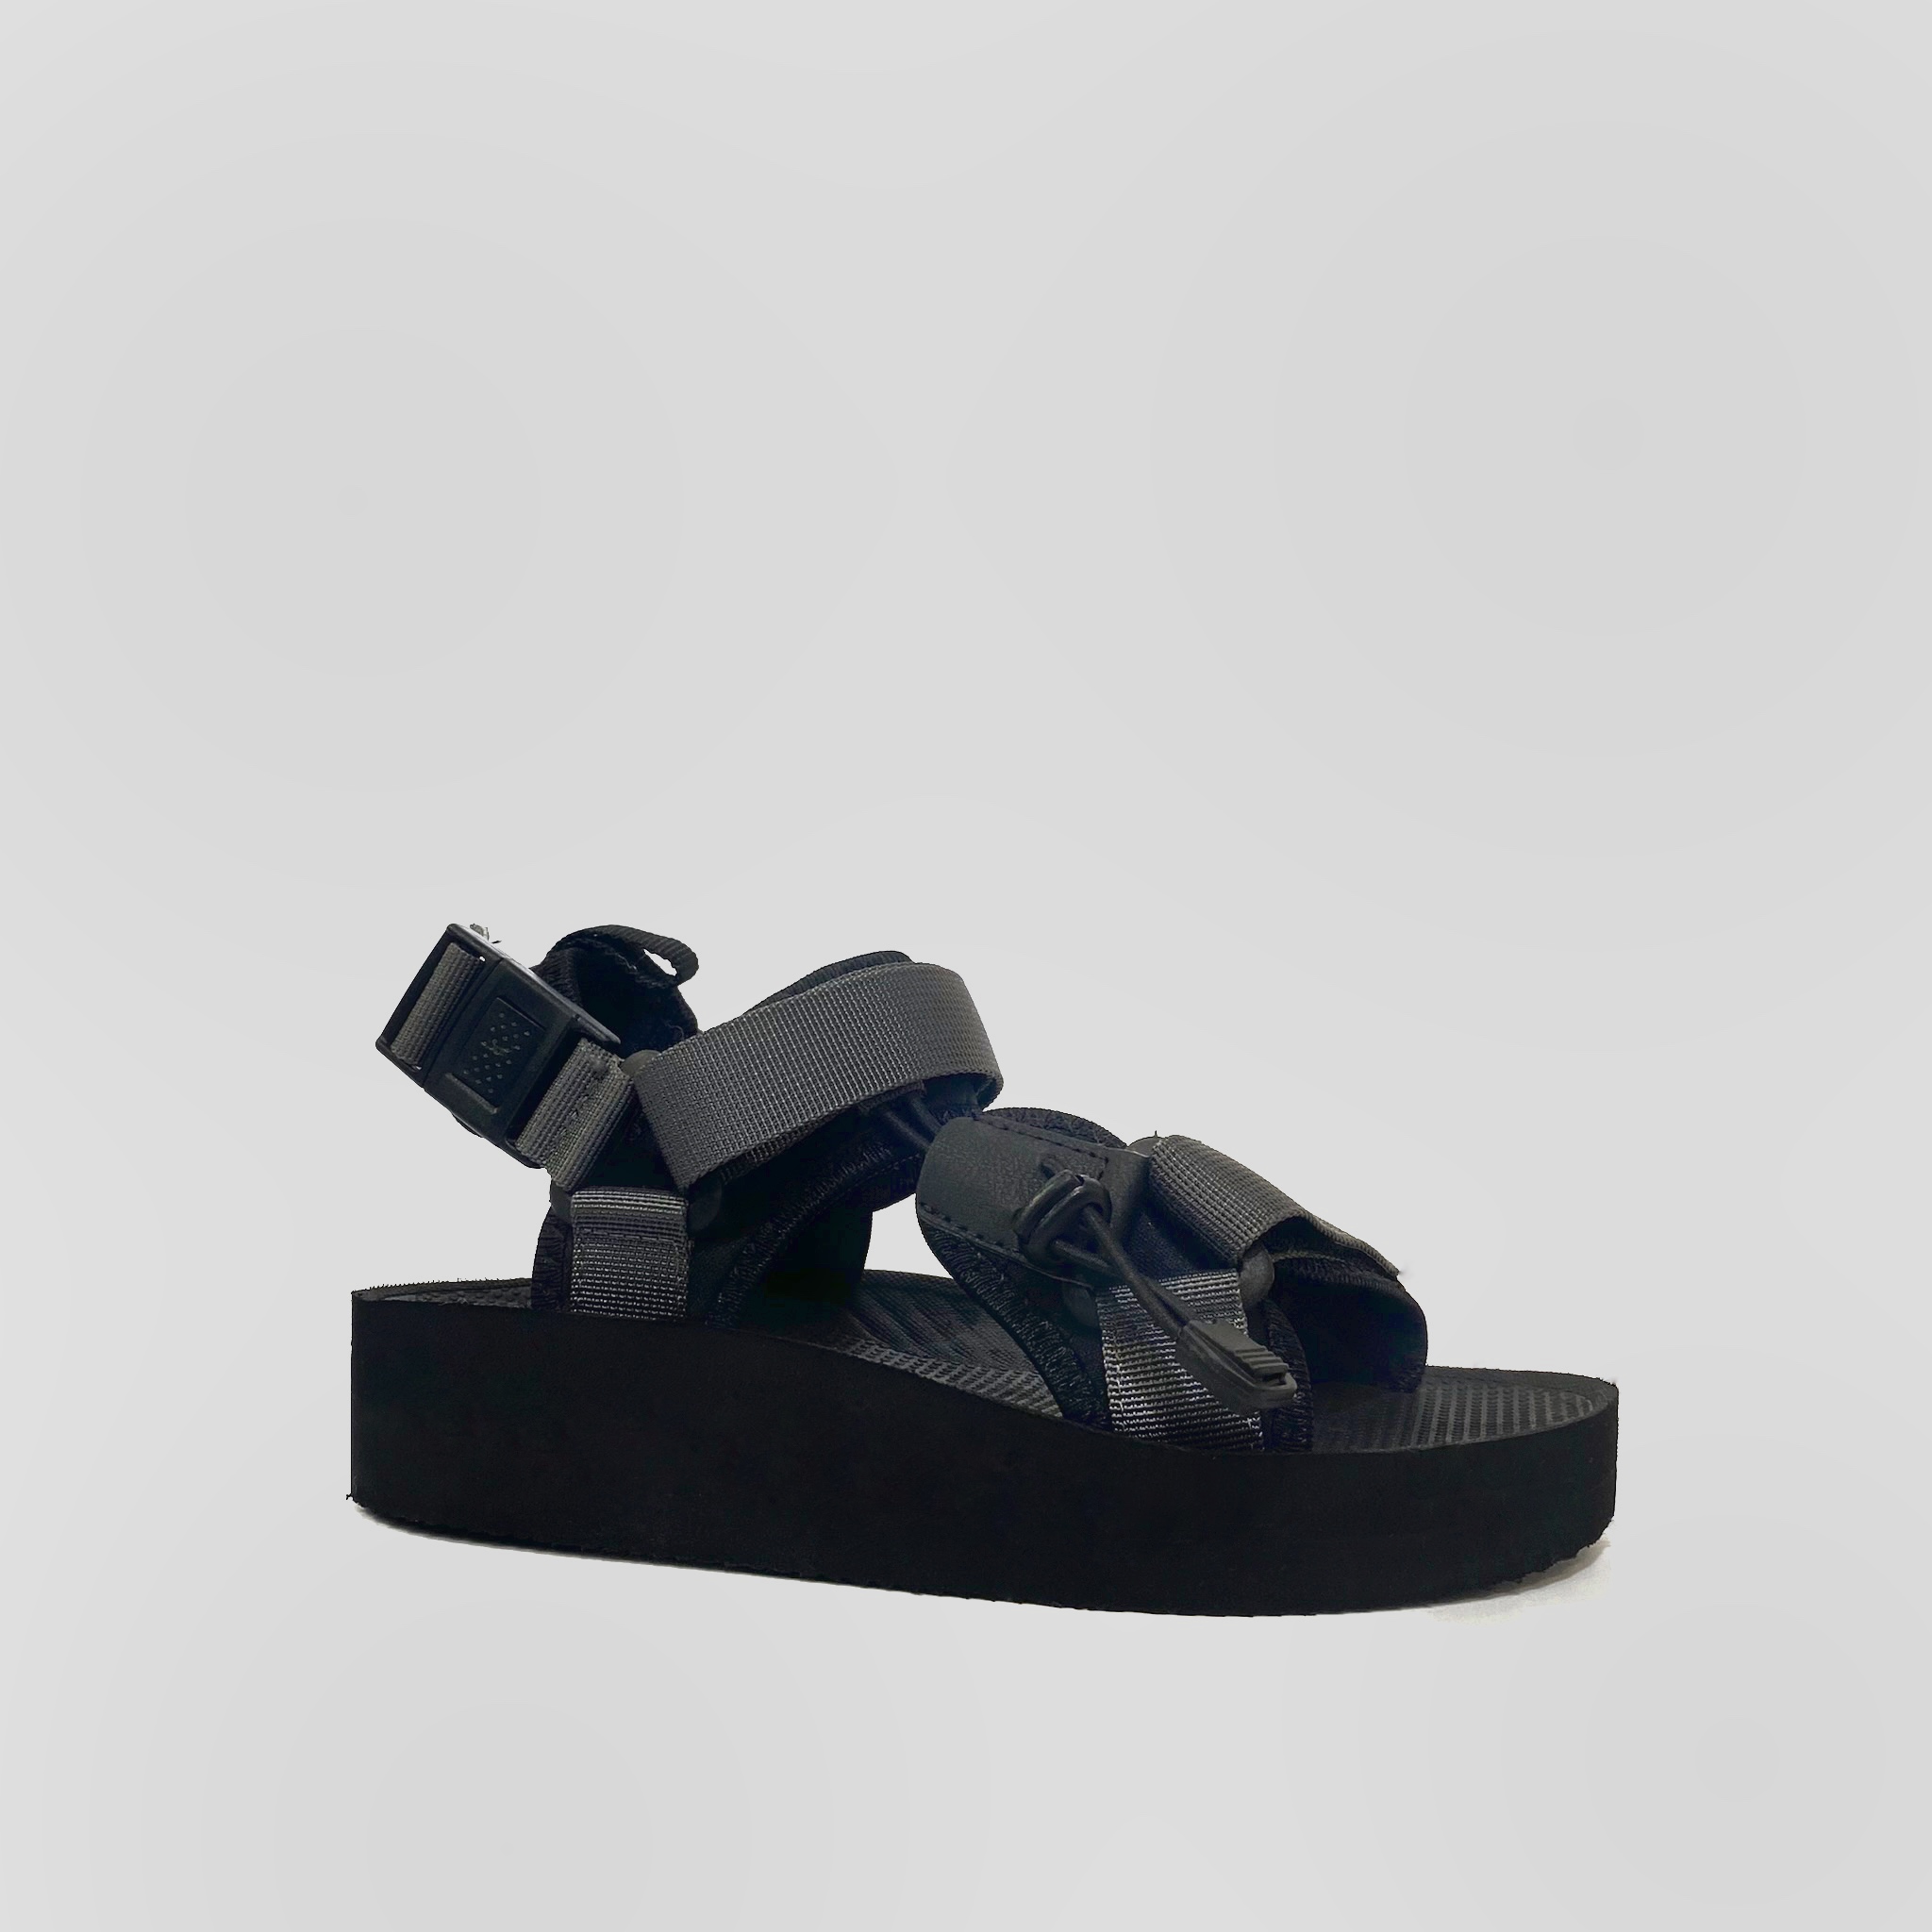 Giày Sandal Nữ The Bily 01W Quai Chéo Dây Rút - Màu Xám BL01WX